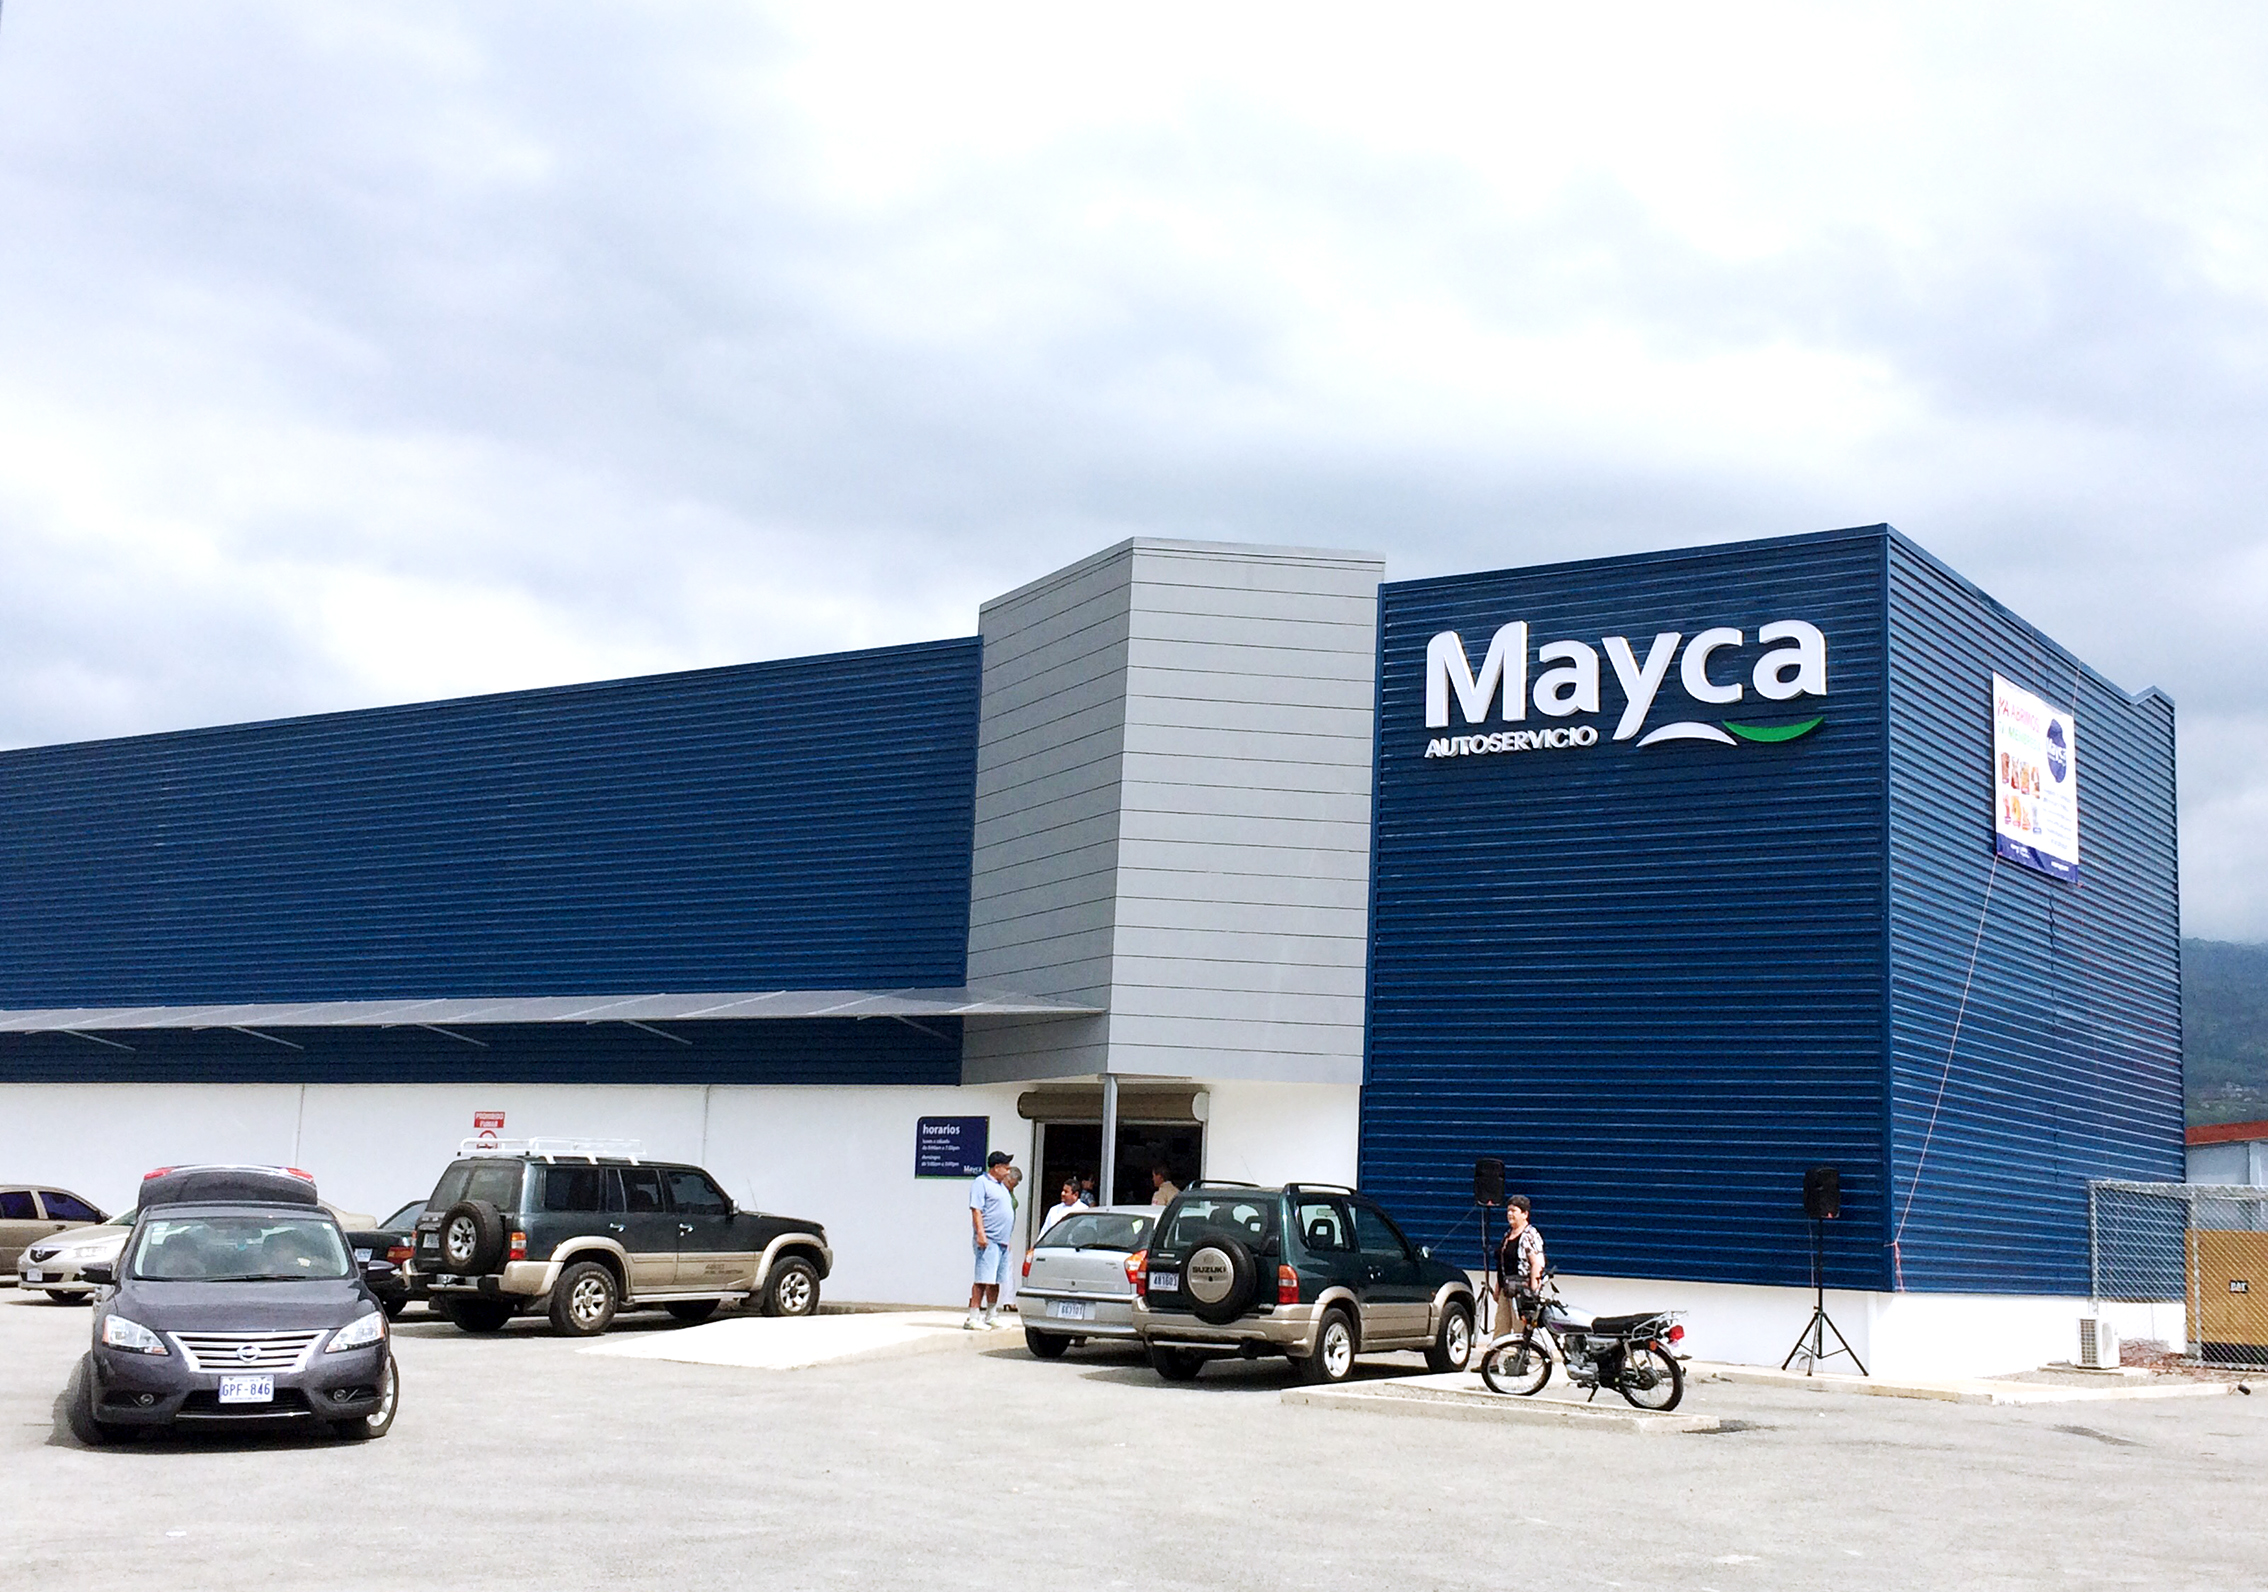 Mayca continúa su plan de aperturas de autoservicios